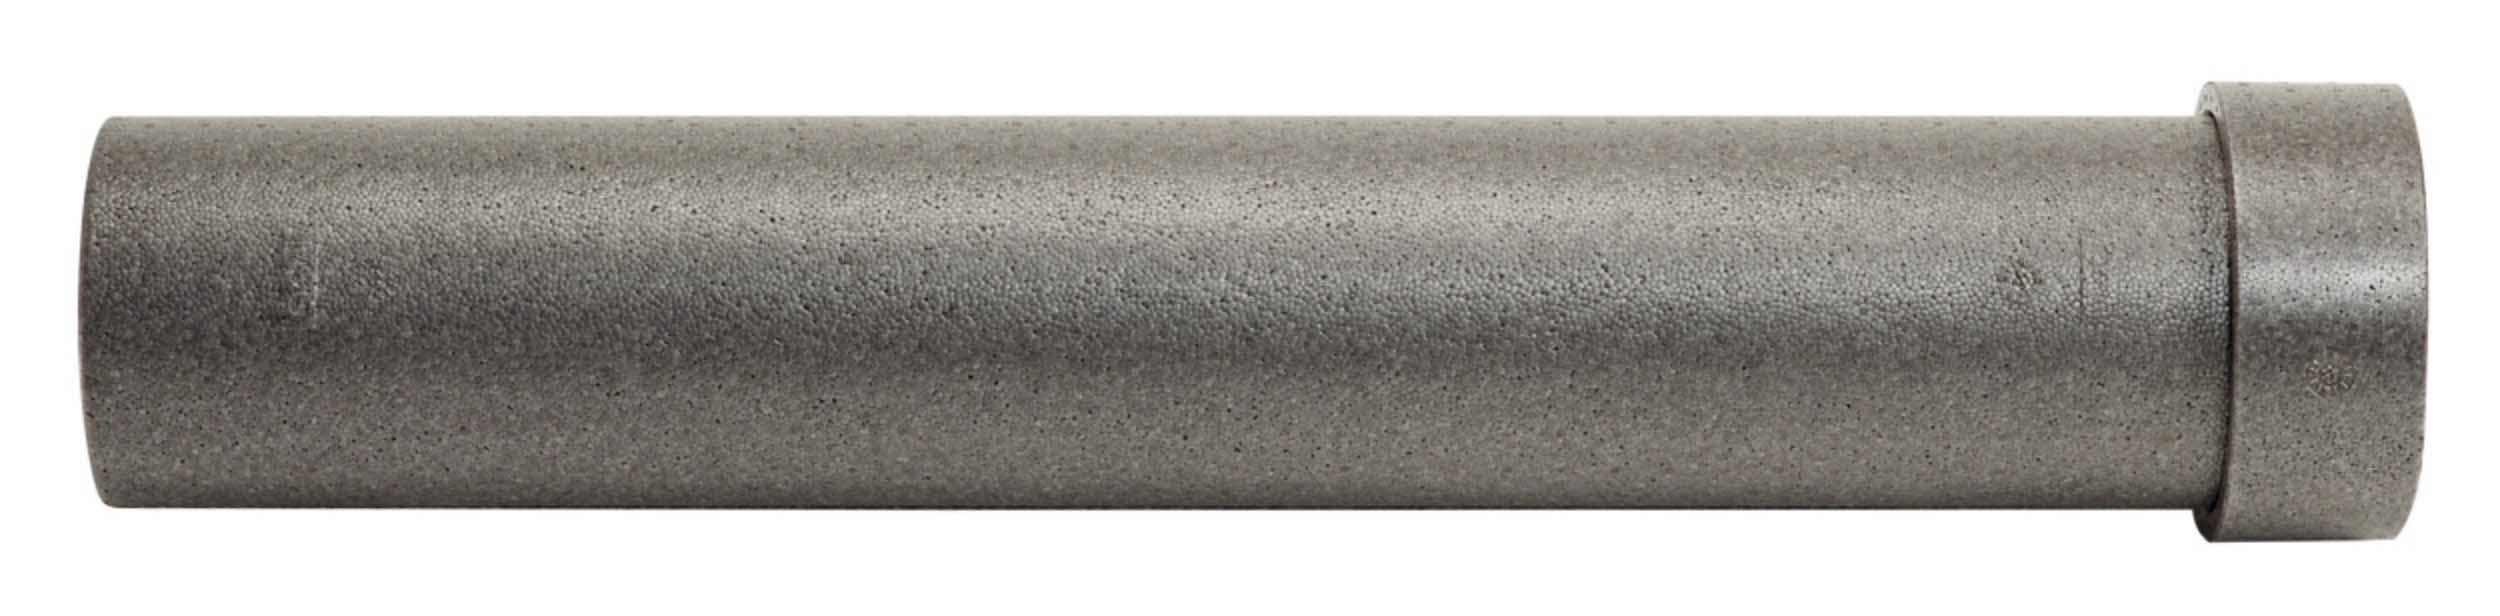 VA EPP Rohr Durchmesser 180/150 mm Länge 1000 mm